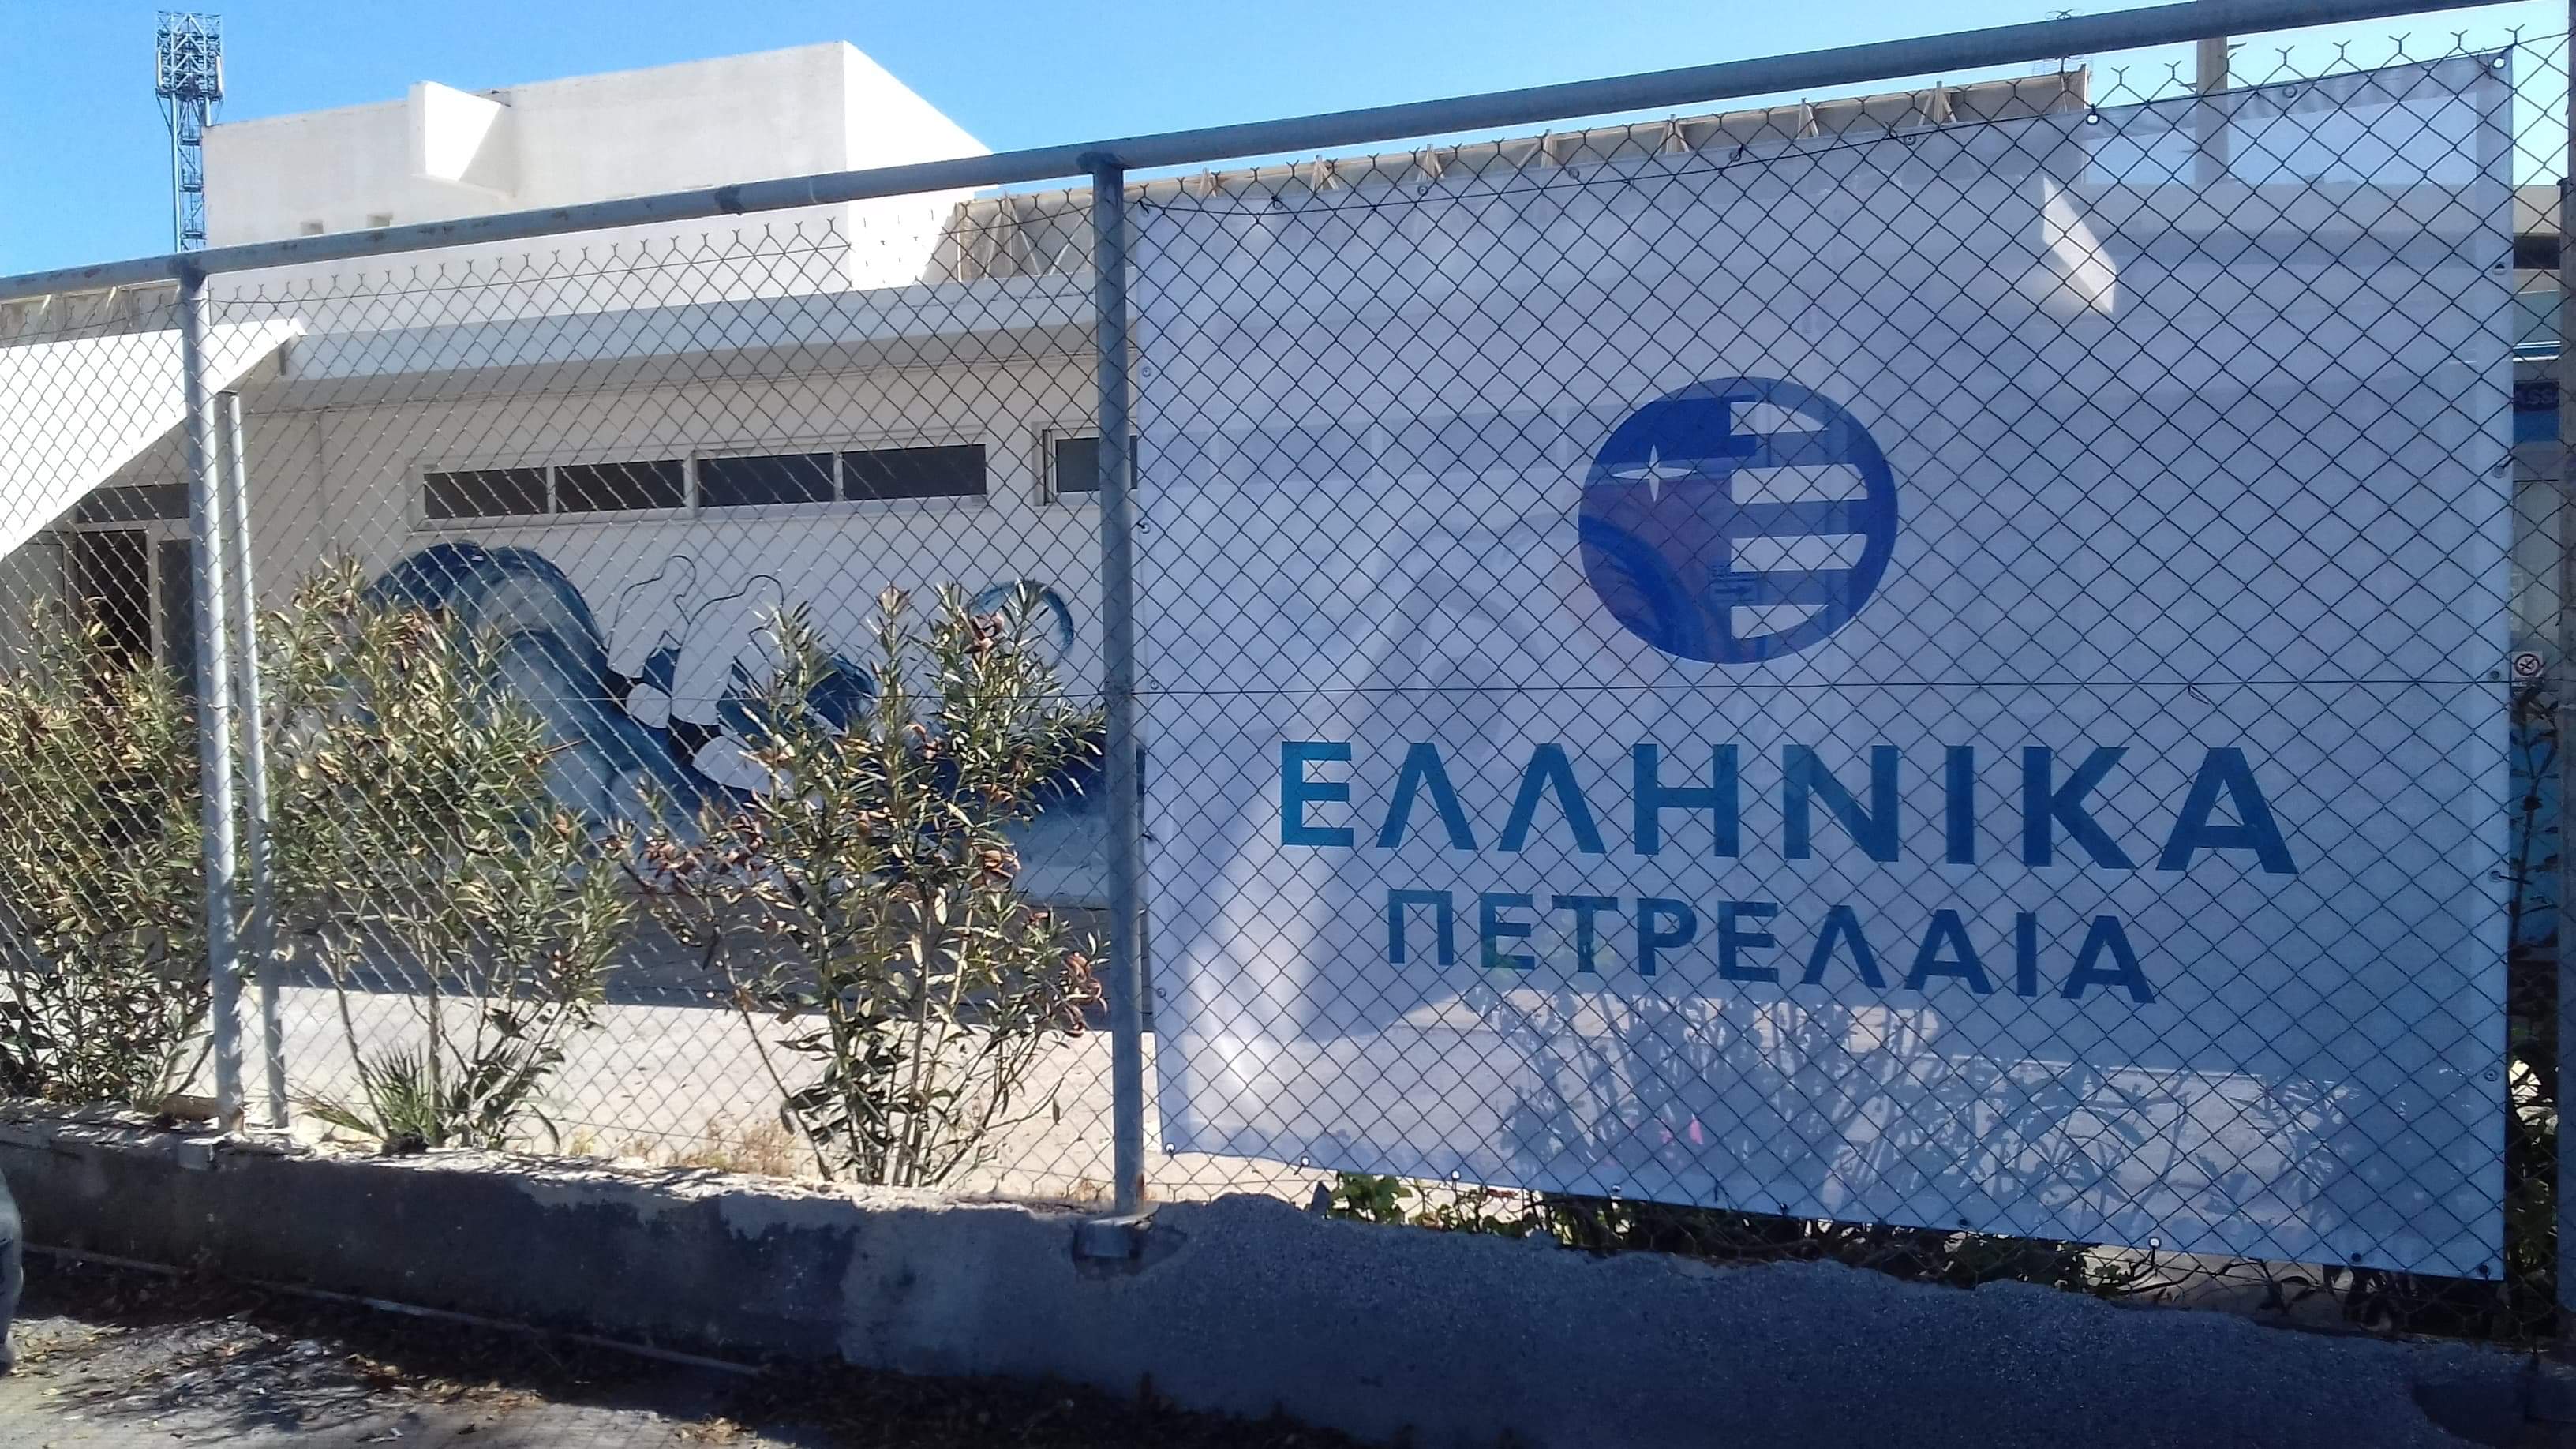 Το ευχαριστήριο του ΕΑΚΗ στον Λ. Αυγενάκη και την εταιρεία Ελληνικά Πετρέλαια